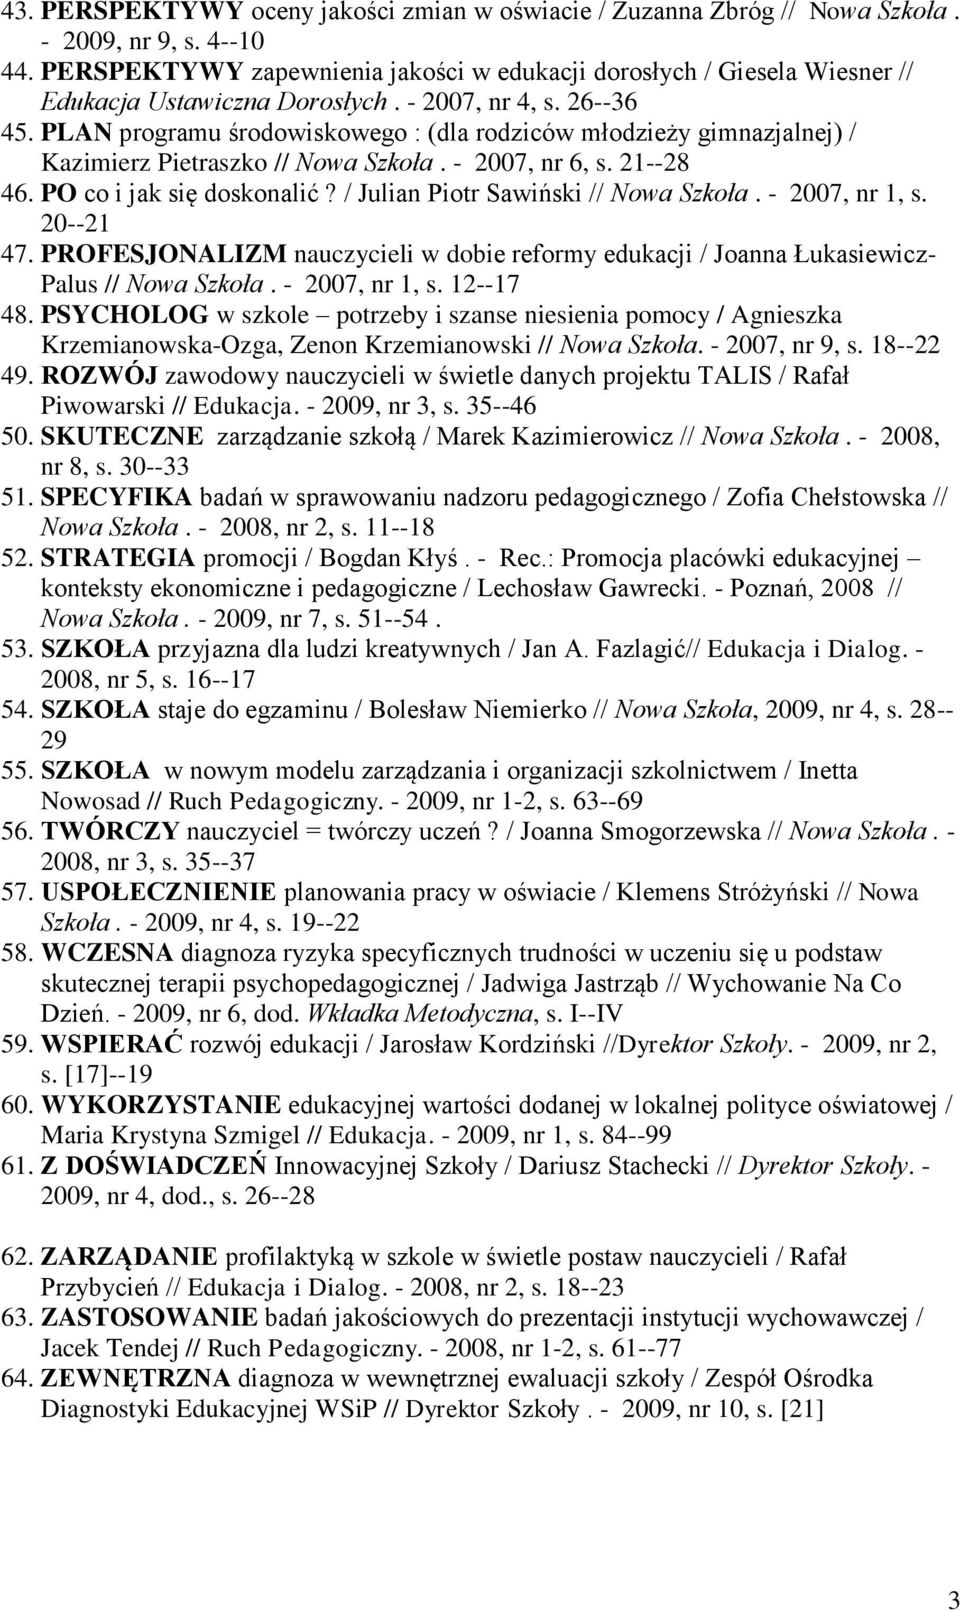 PLAN programu środowiskowego : (dla rodziców młodzieży gimnazjalnej) / Kazimierz Pietraszko // Nowa Szkoła. - 2007, nr 6, s. 21--28 46. PO co i jak się doskonalić?